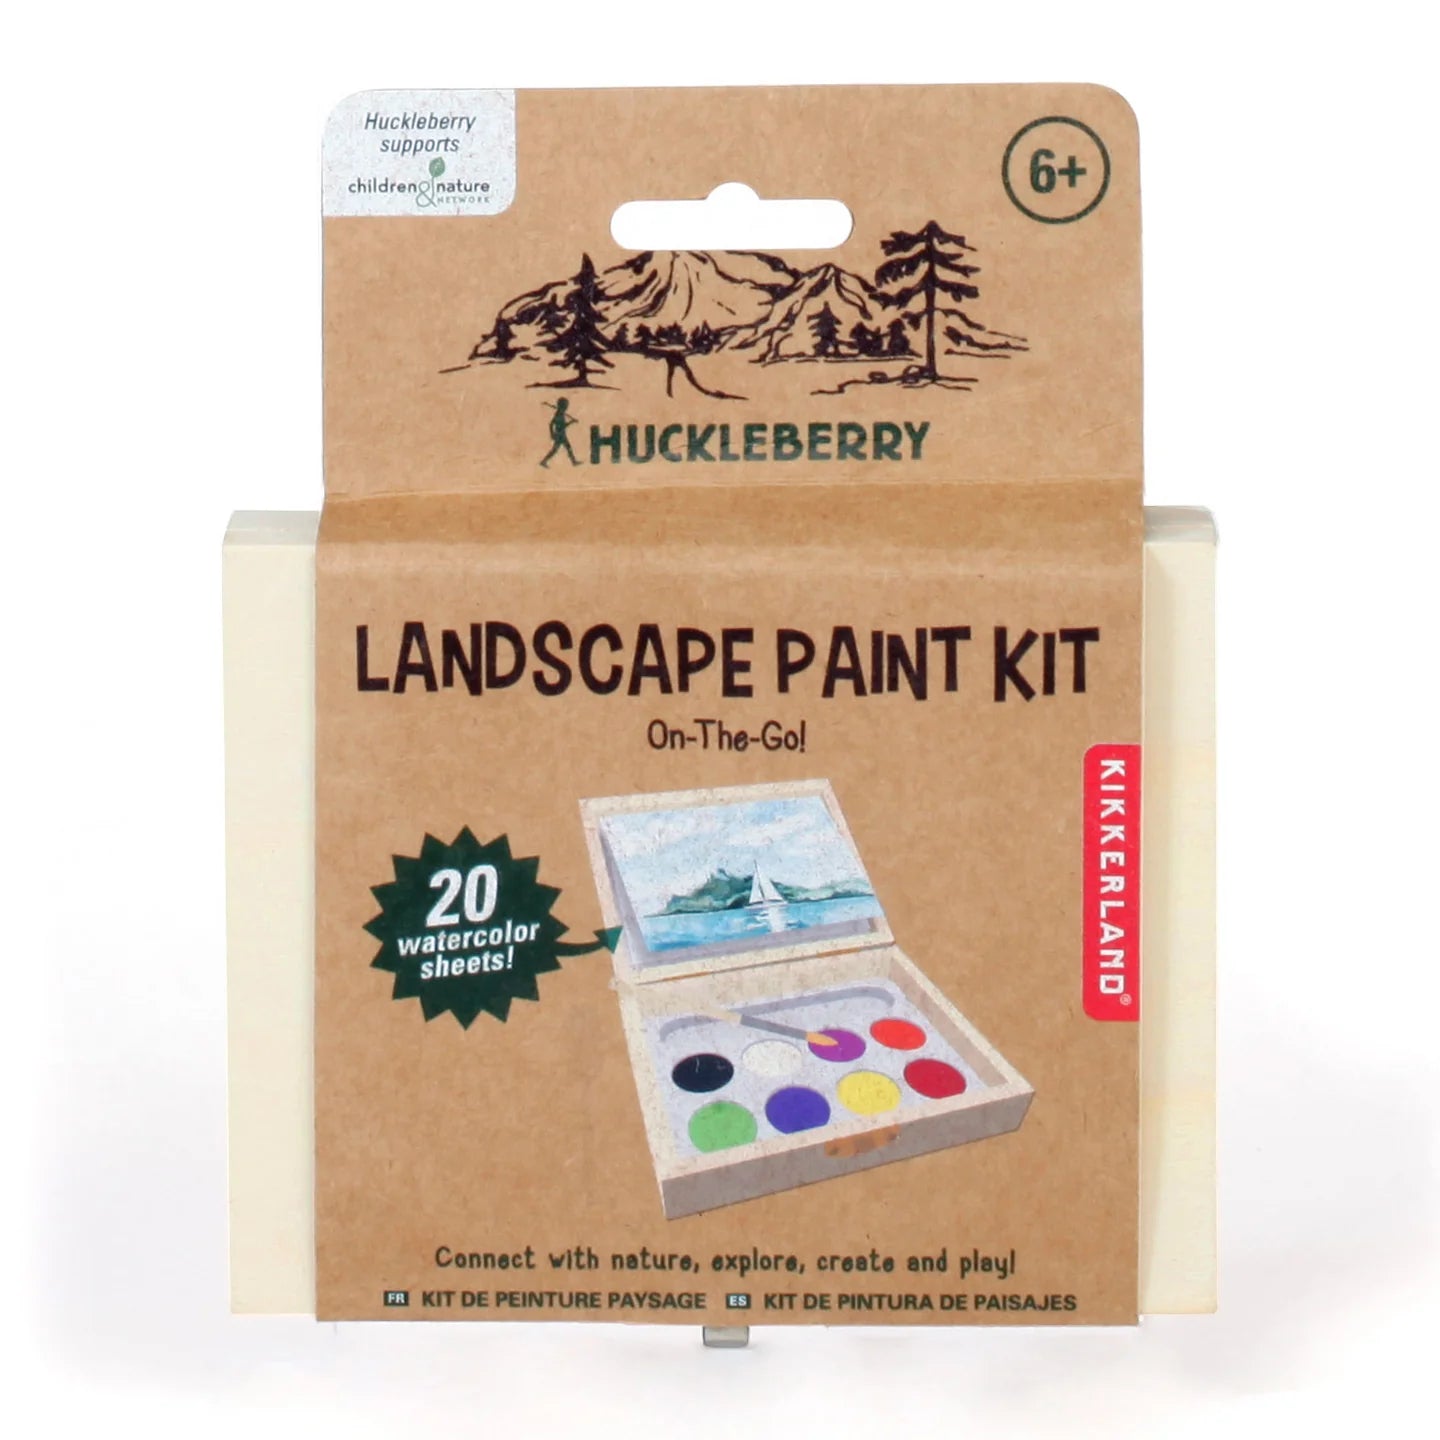 Landscape Paint Kit - Huckleberry